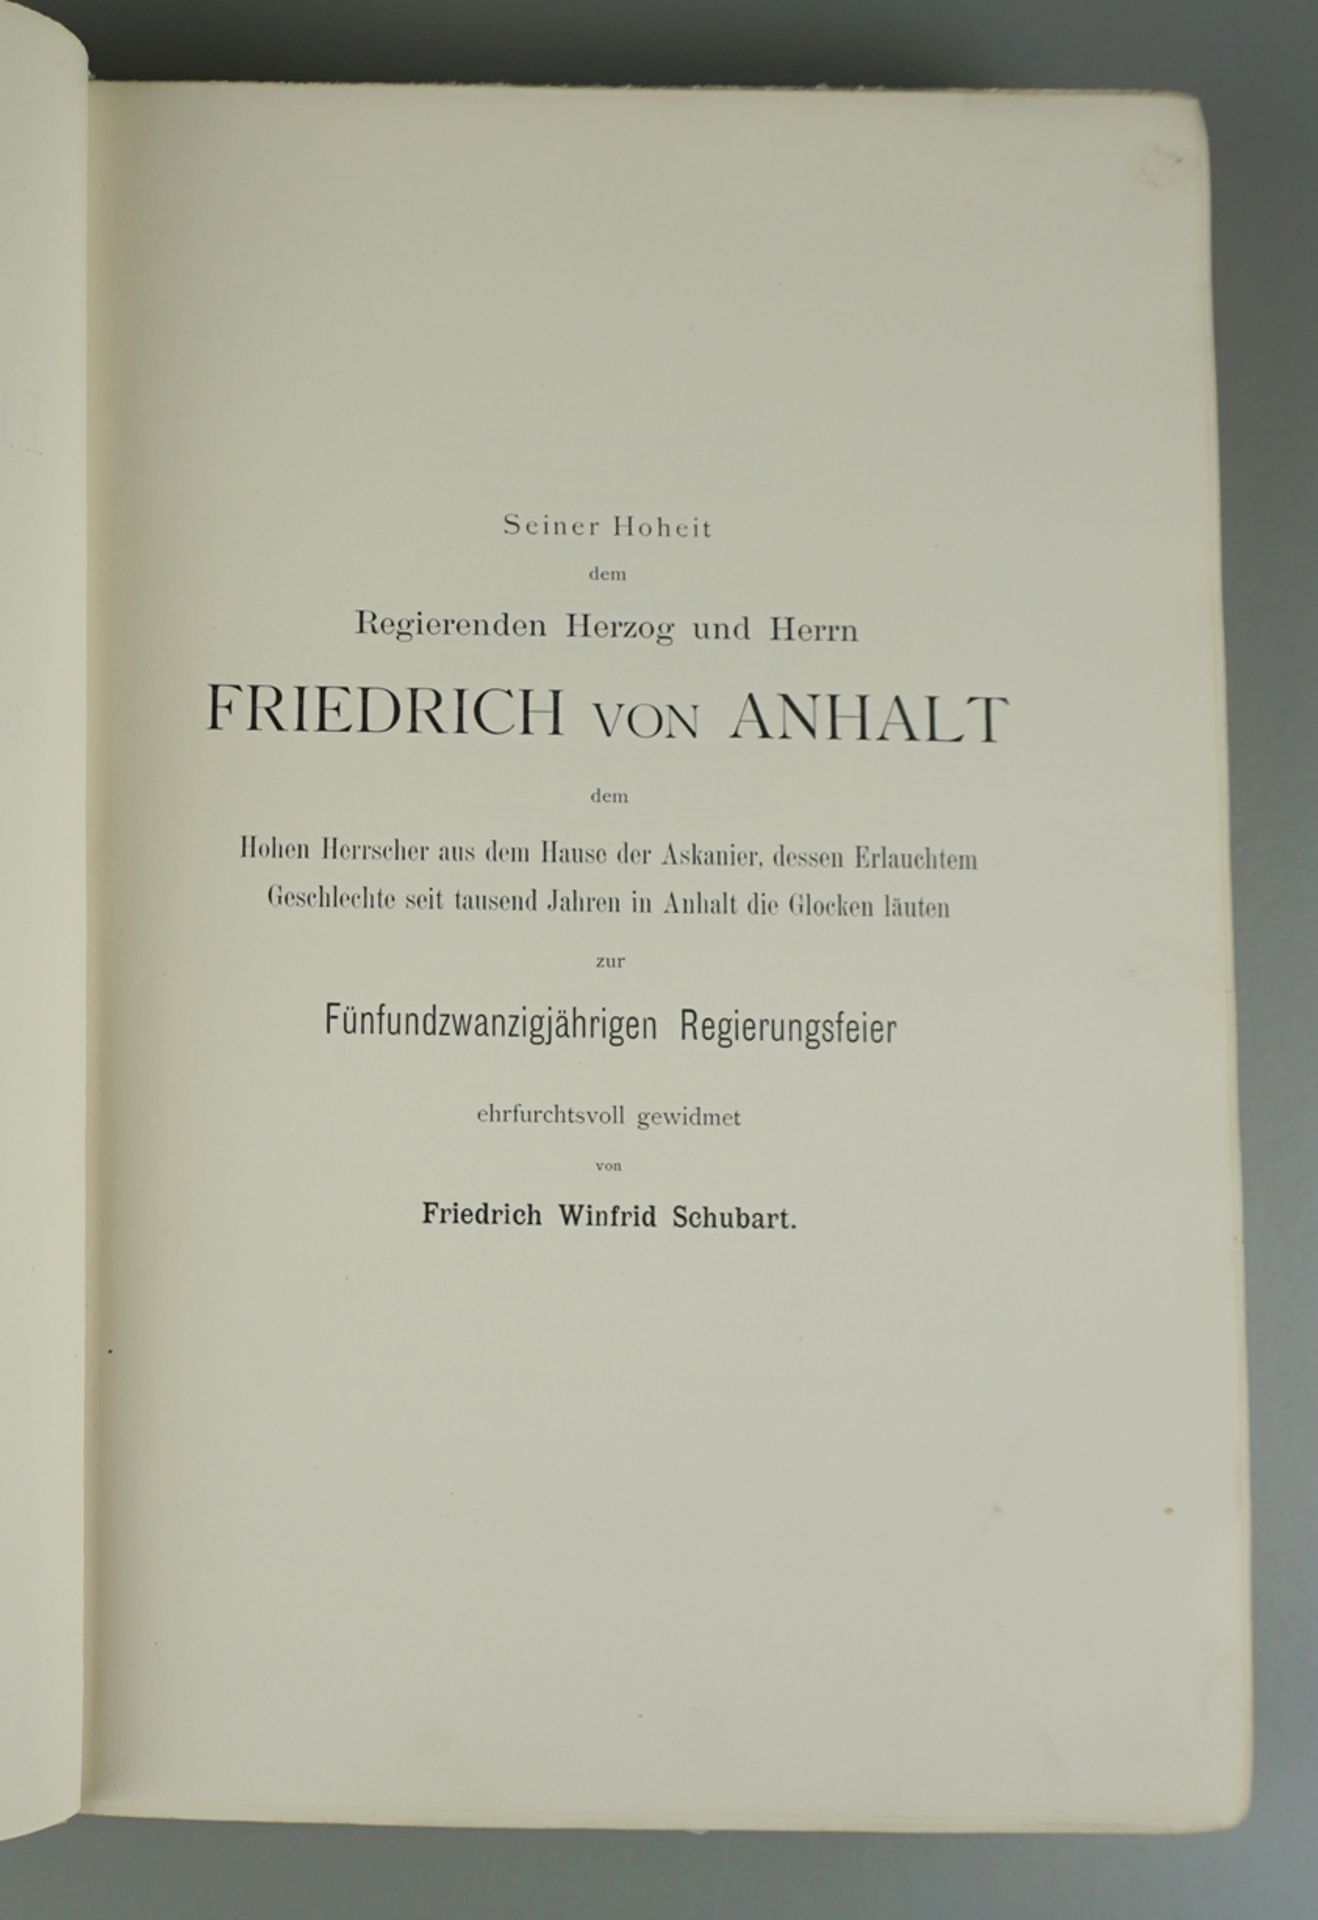 Die Glocken im Herzogtum Anhalt, von Friedrich Winfrid Schubart, Dessau 1896 - Bild 3 aus 4